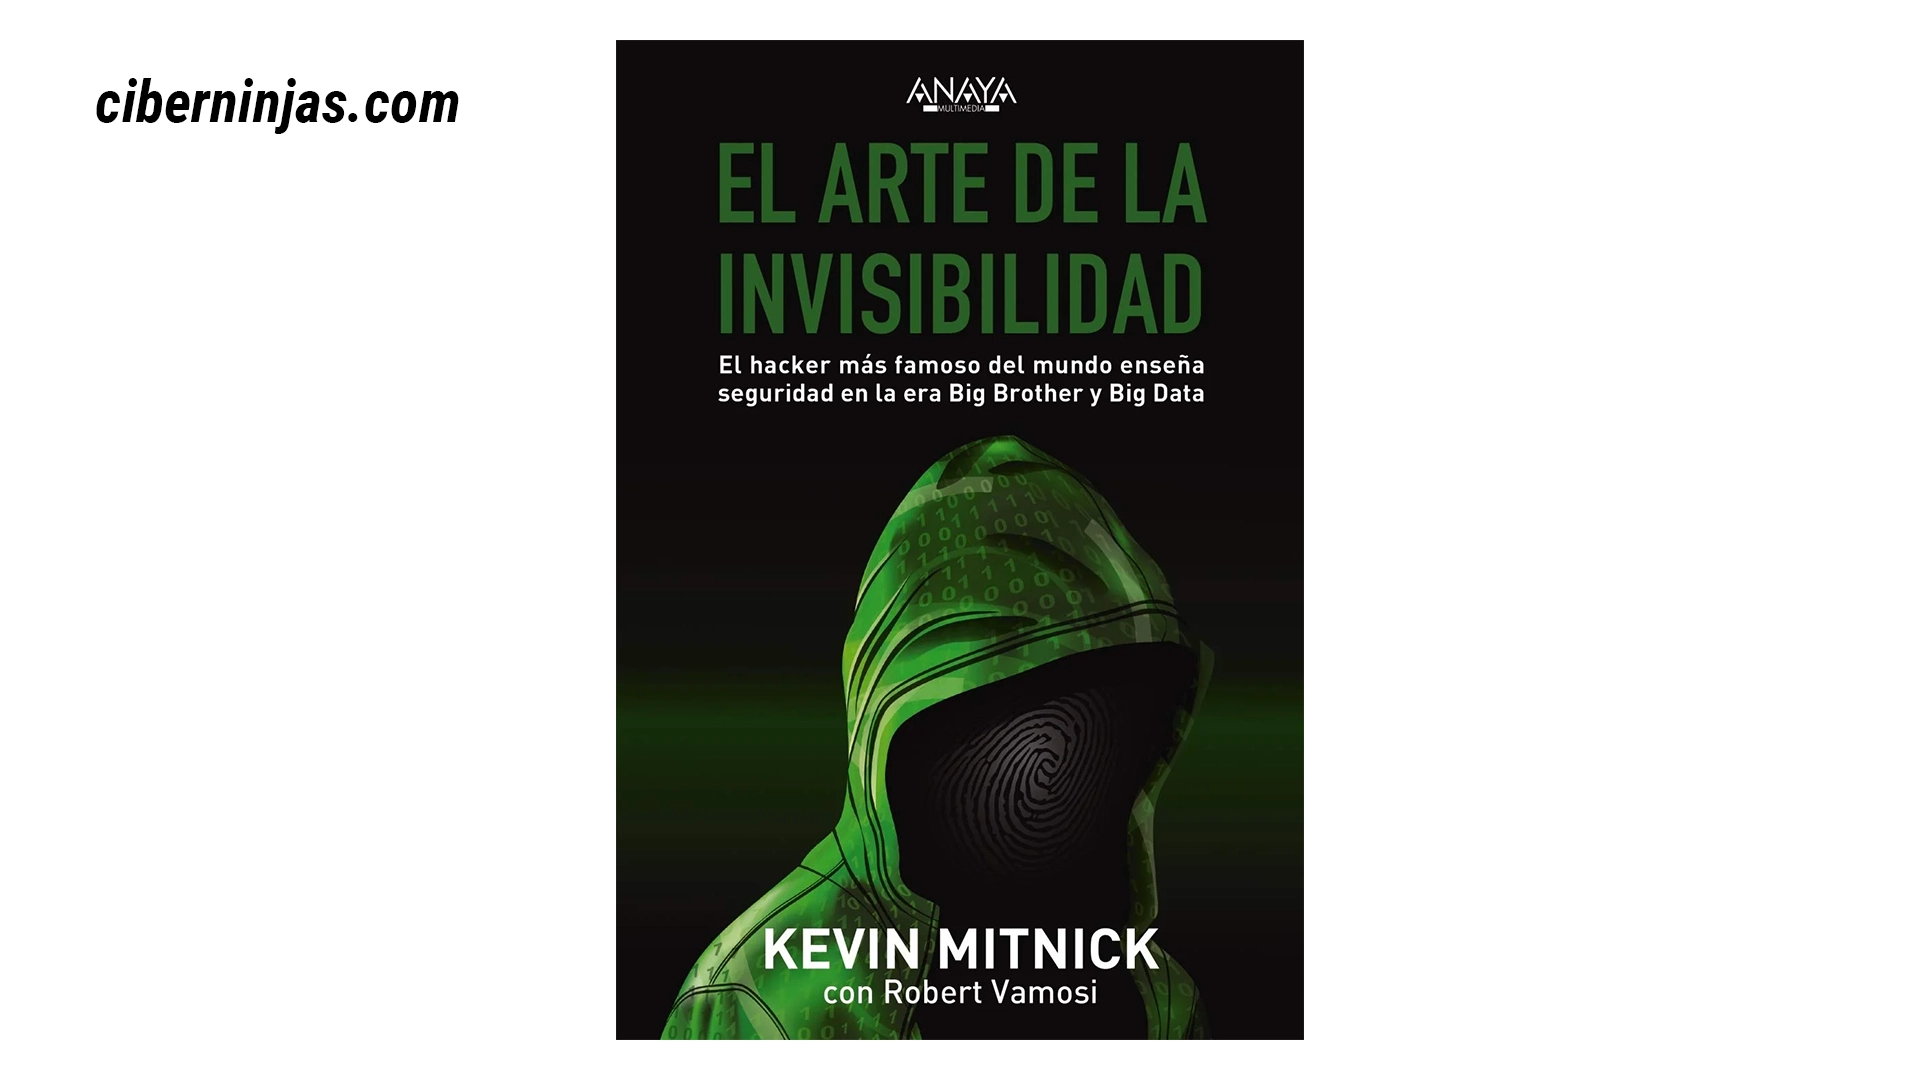 El Arte de la Invisibilidad, por Kevin Mitnick